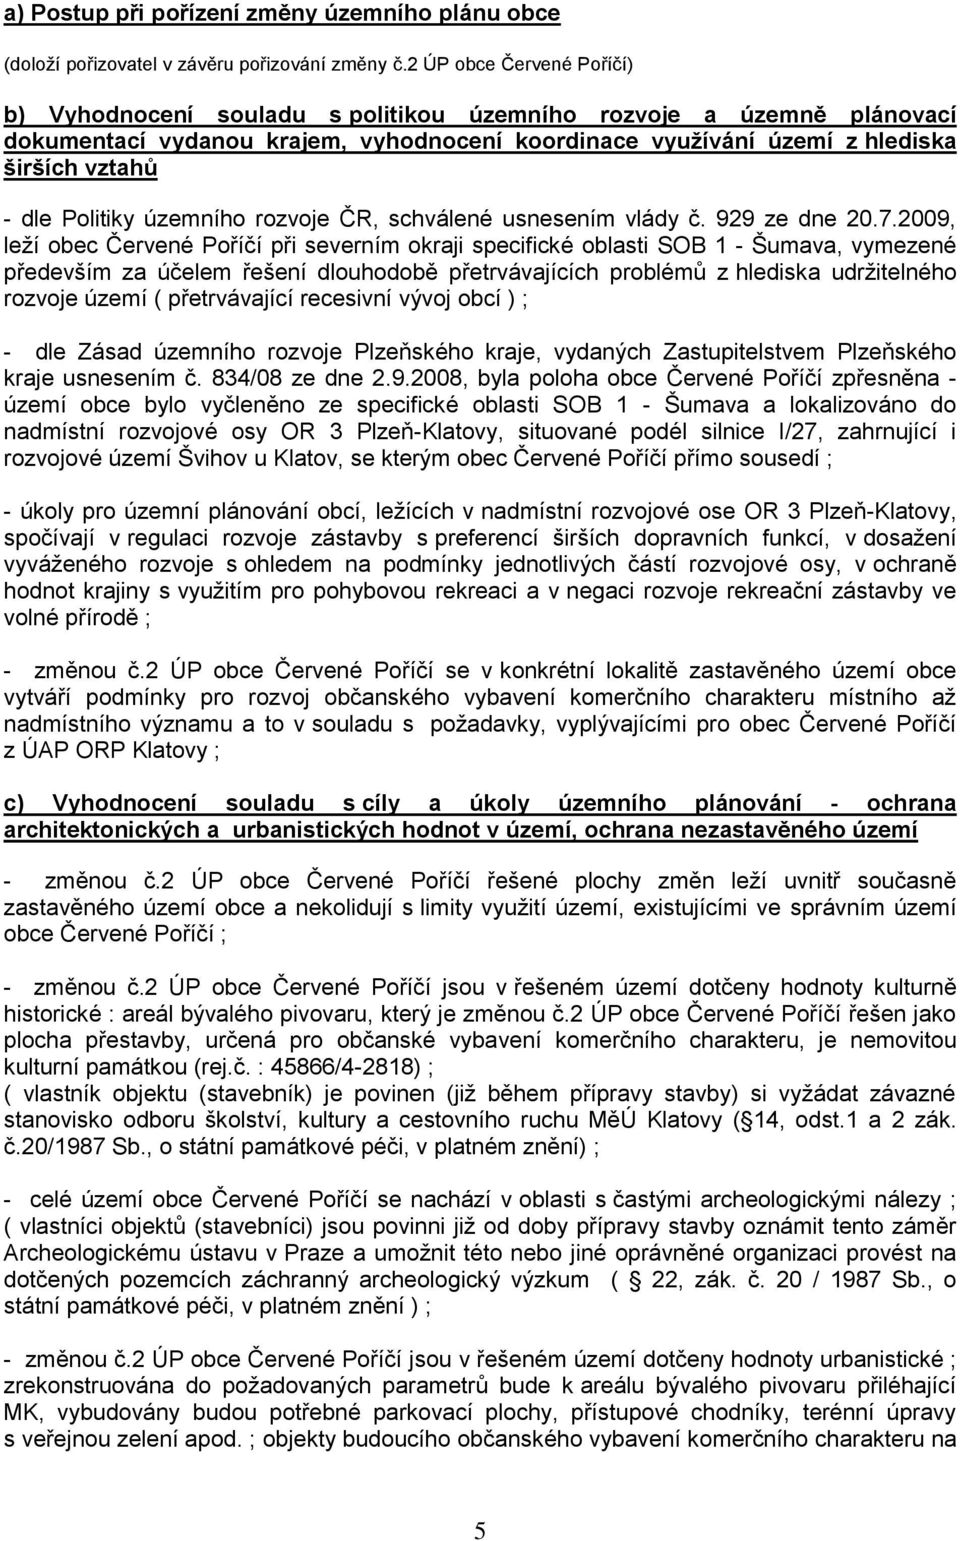 Politiky územního rozvoje ČR, schválené usnesením vlády č. 929 ze dne 20.7.